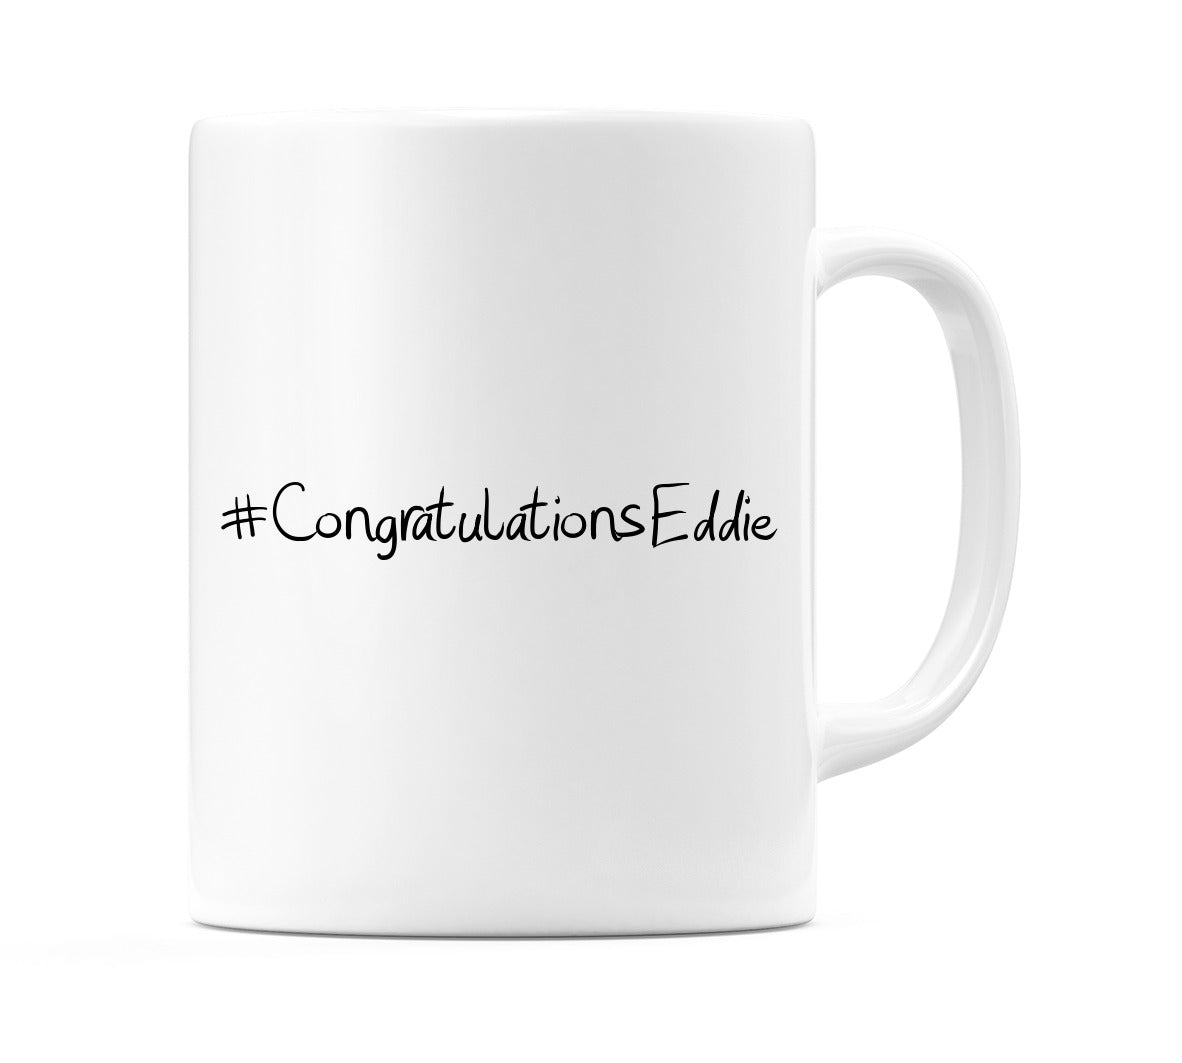 #CongratulationsEddie Mug